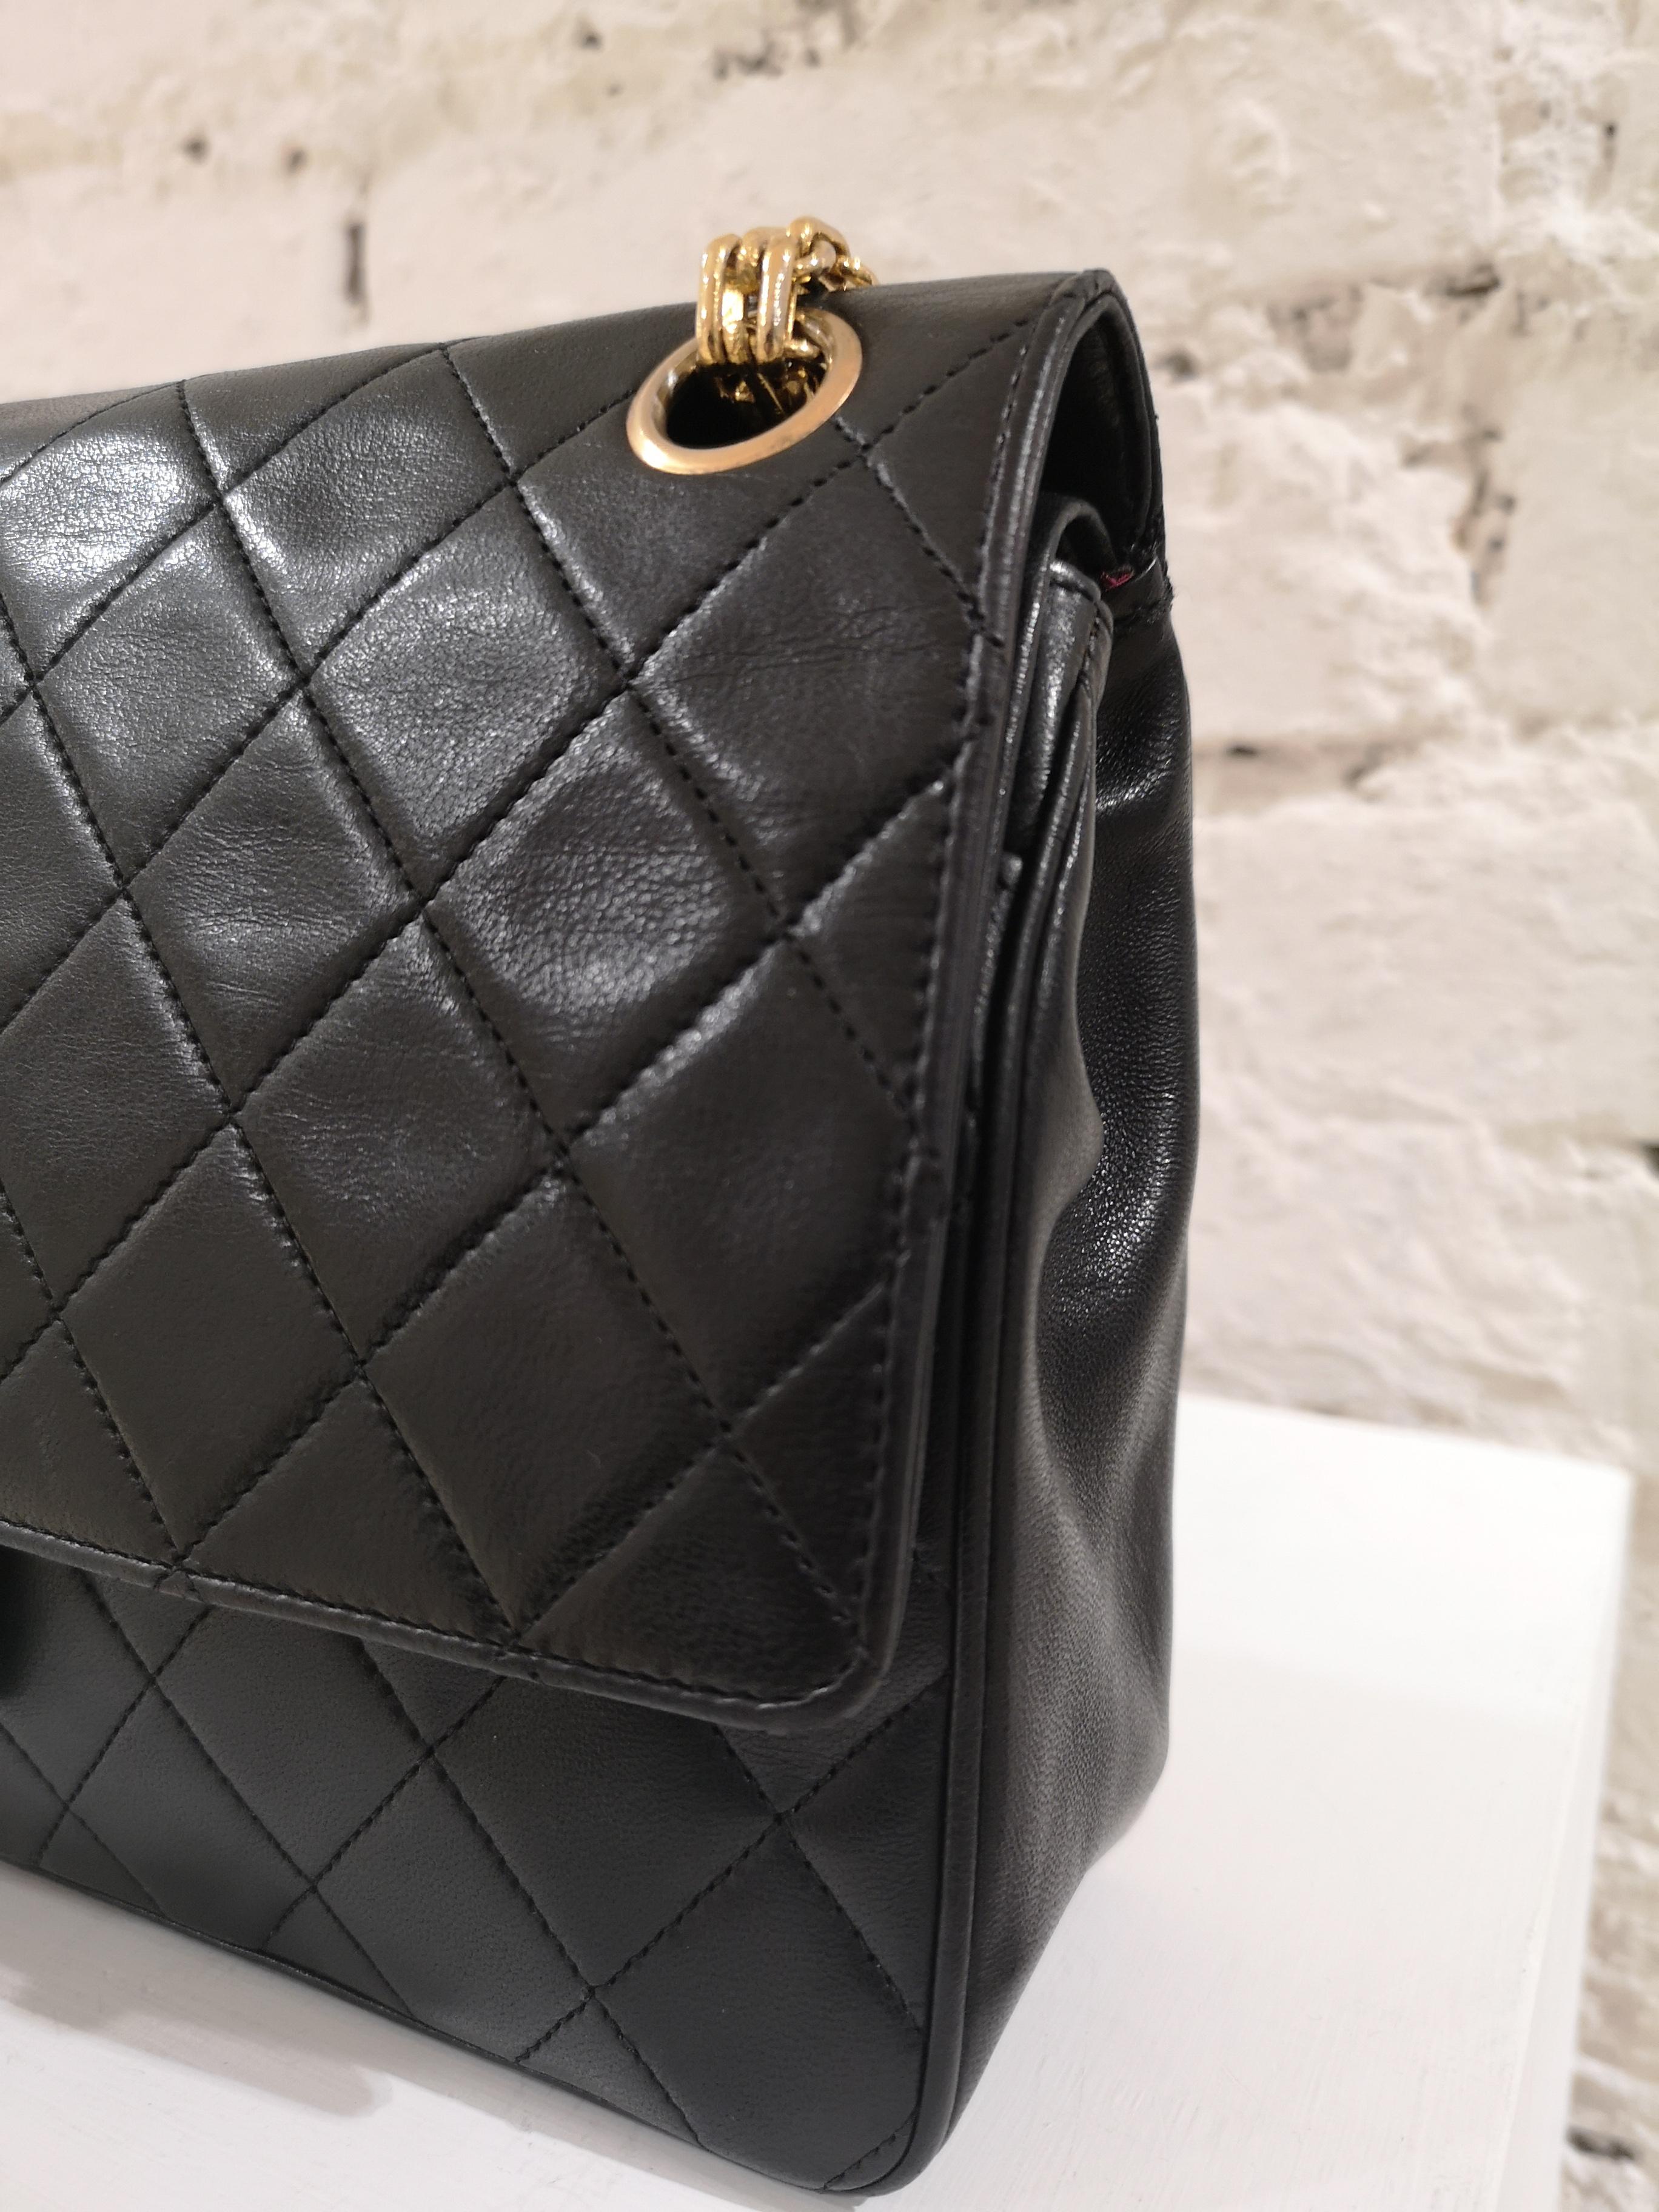 Women's Chanel 2.55 Black Leather Shoulder Bag